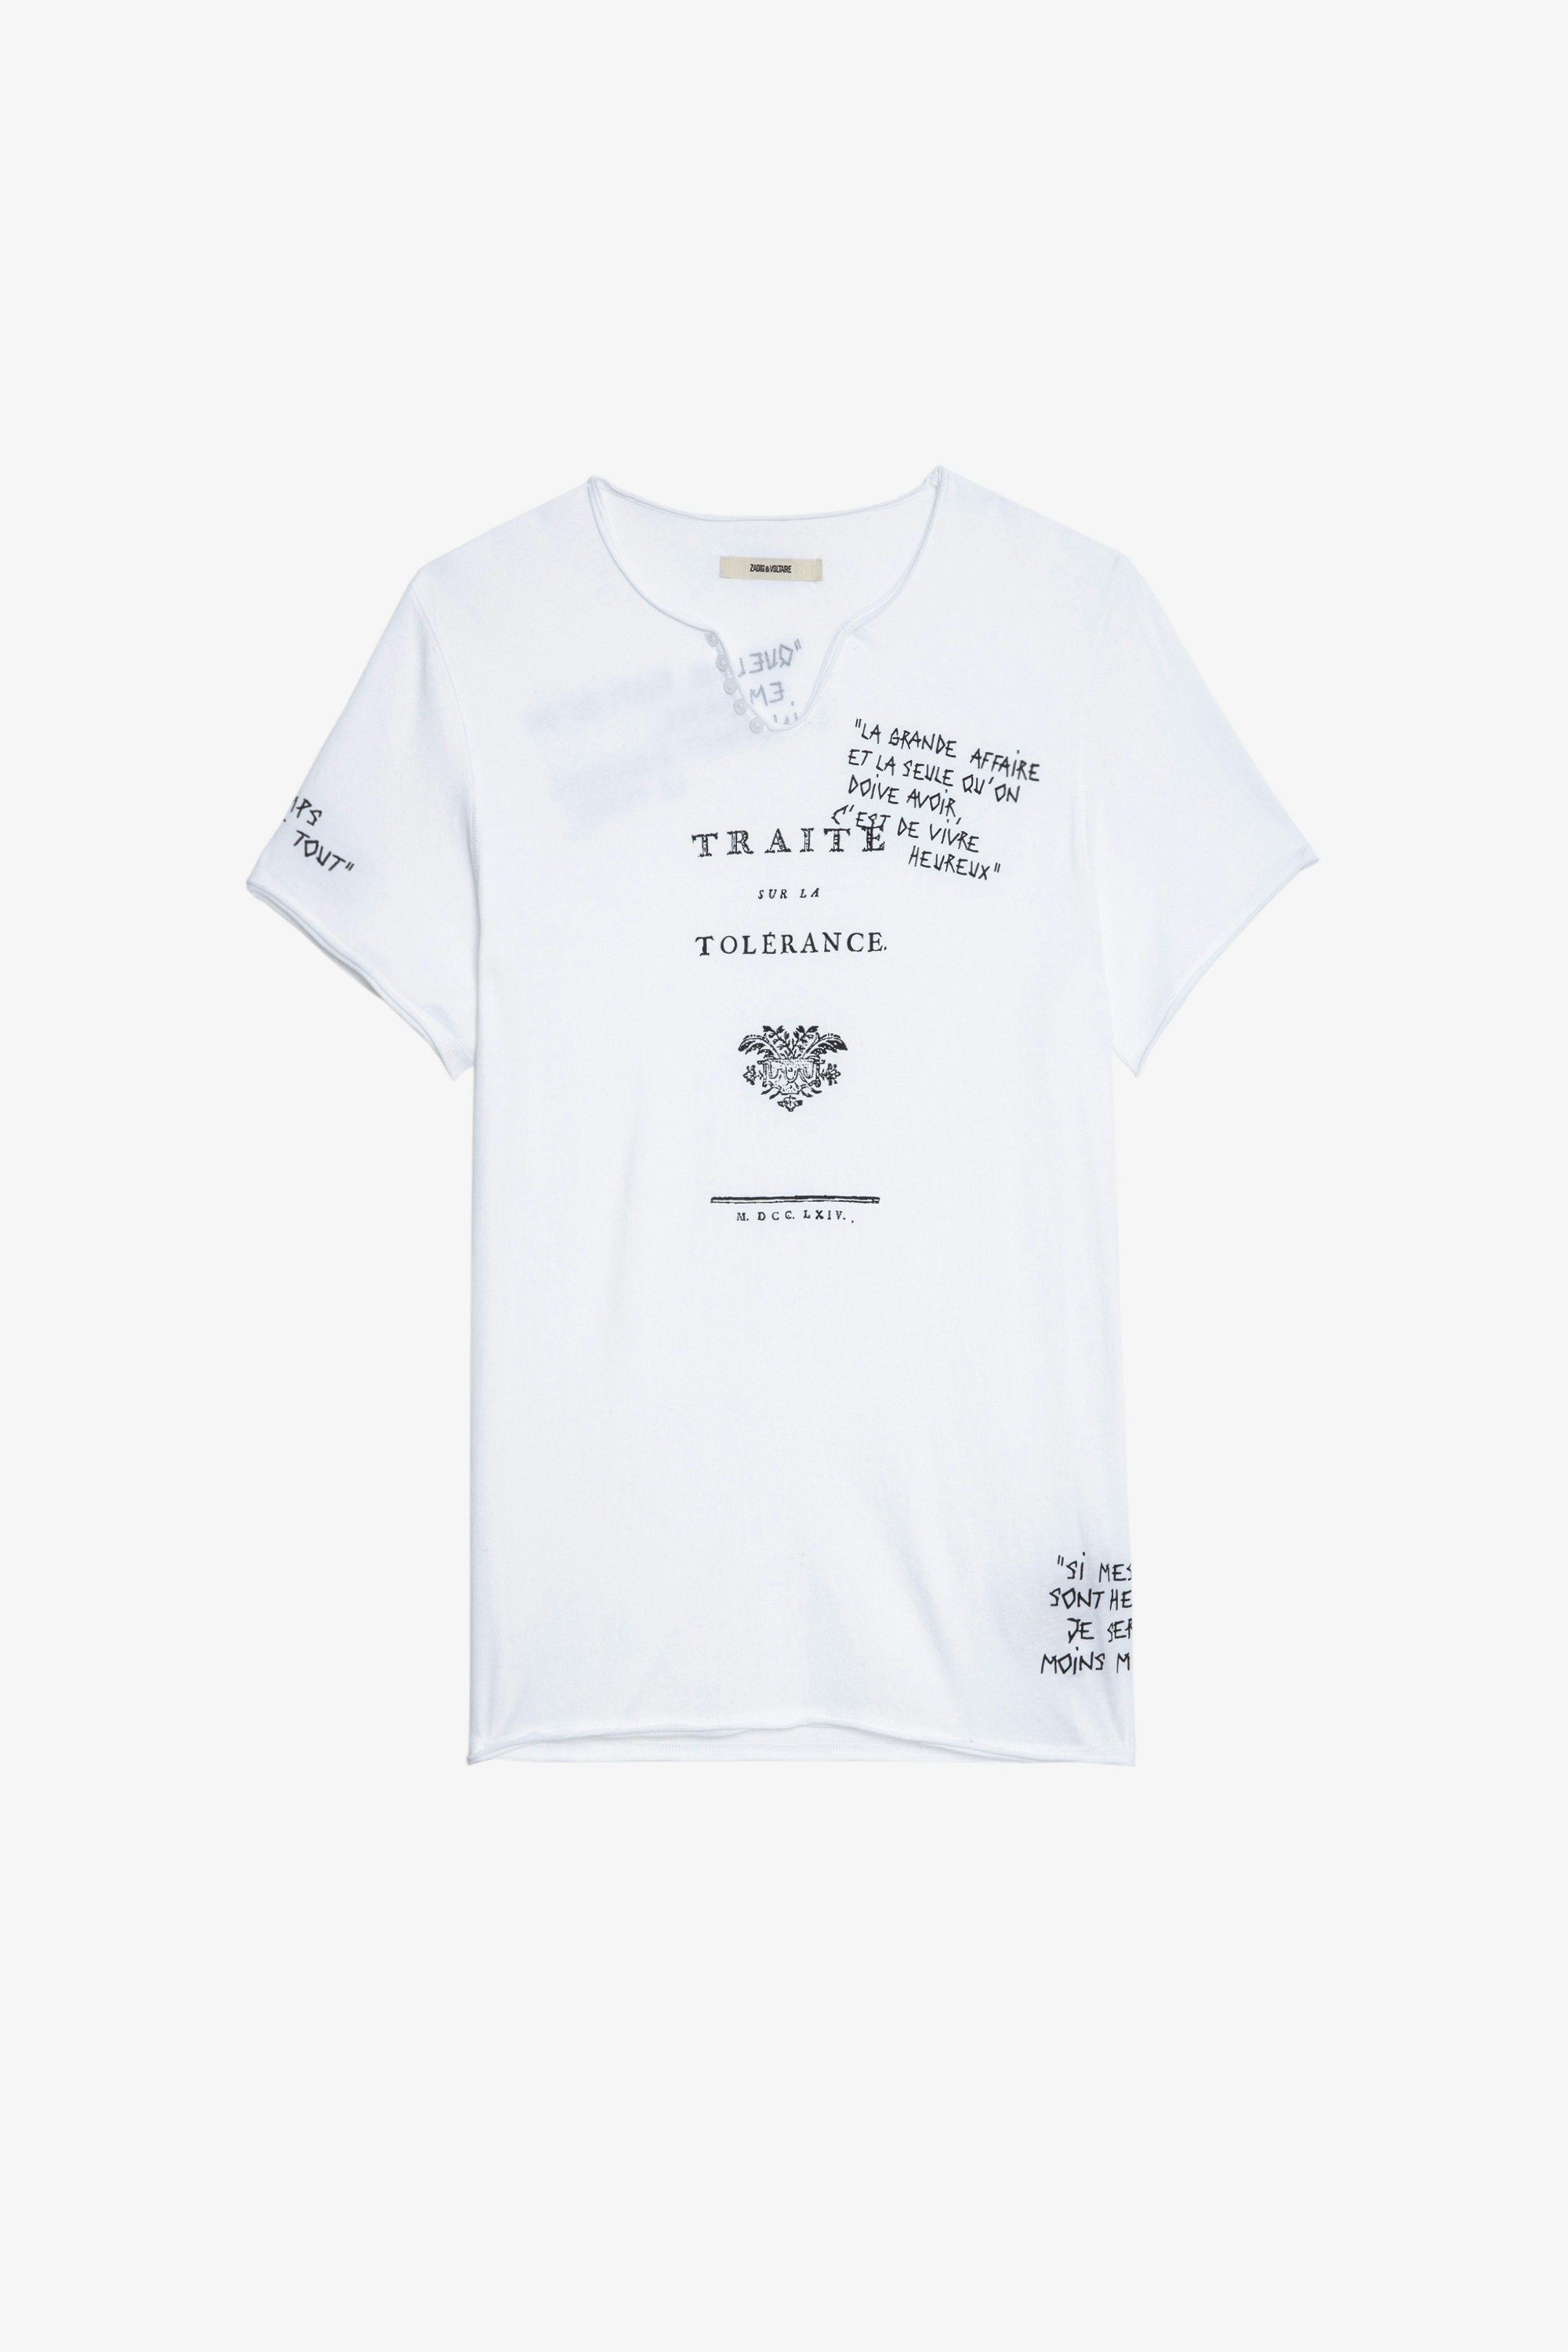 Camiseta Monastir Camiseta blanca de algodón de manga corta con inscripciones «Traité de la Tolérance» para hombre